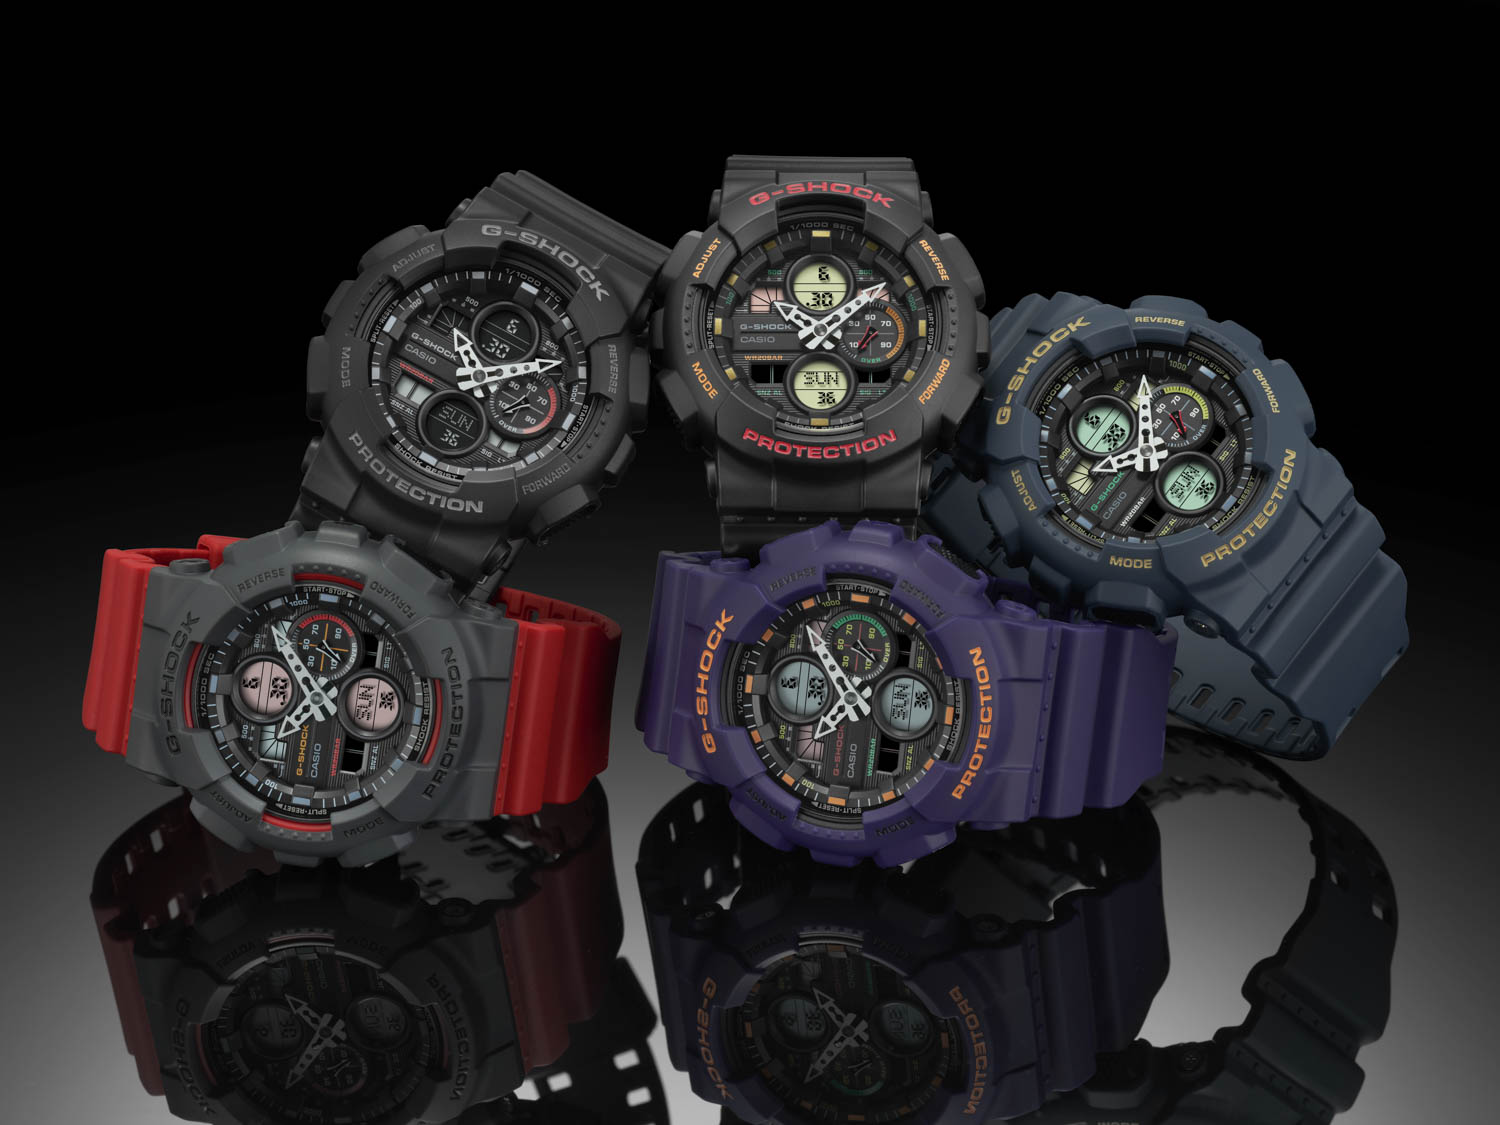 Zegarki G-SHOCK w pięciu wariantach kolorystycznych